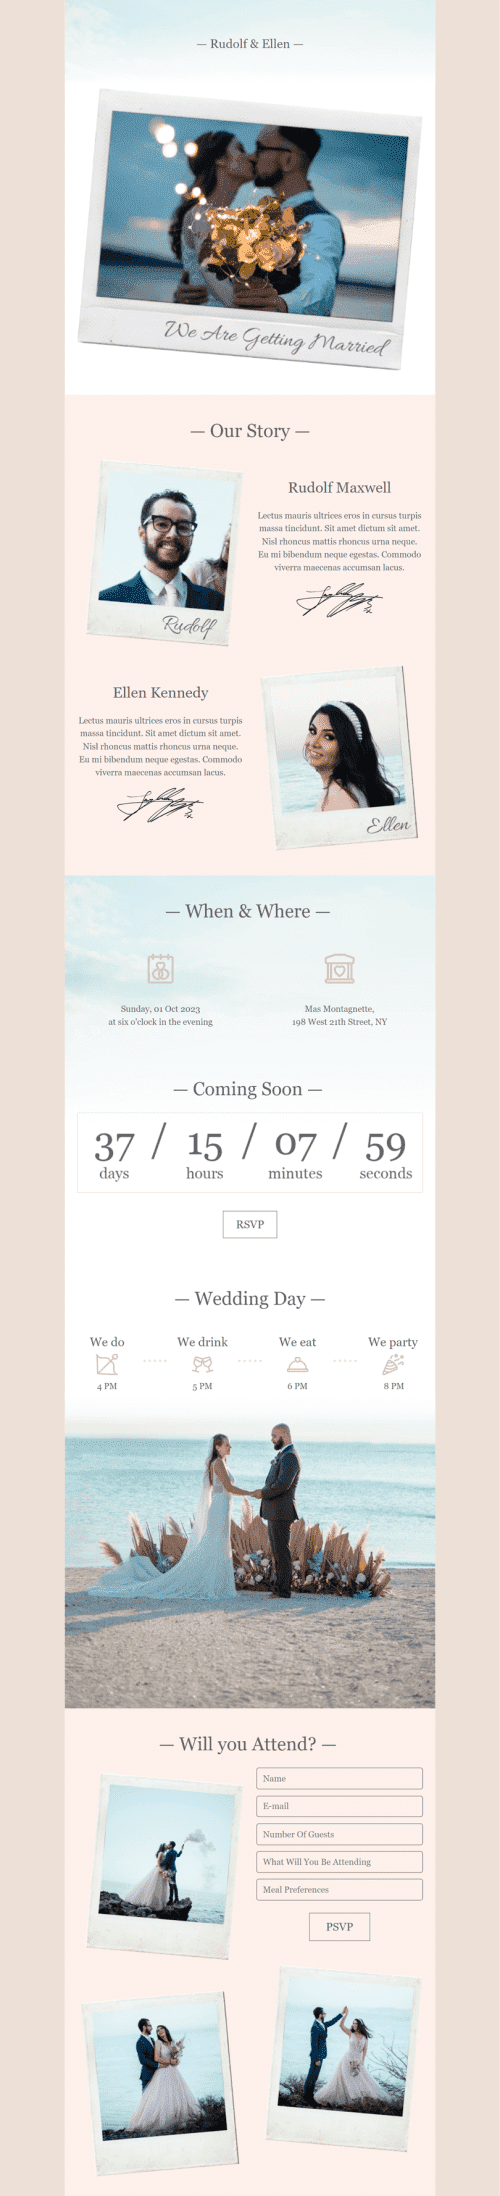 Hochzeit E-Mail-Vorlage «Wir werden heiraten» für Fotografie-Branche Ansicht auf Mobilgeräten